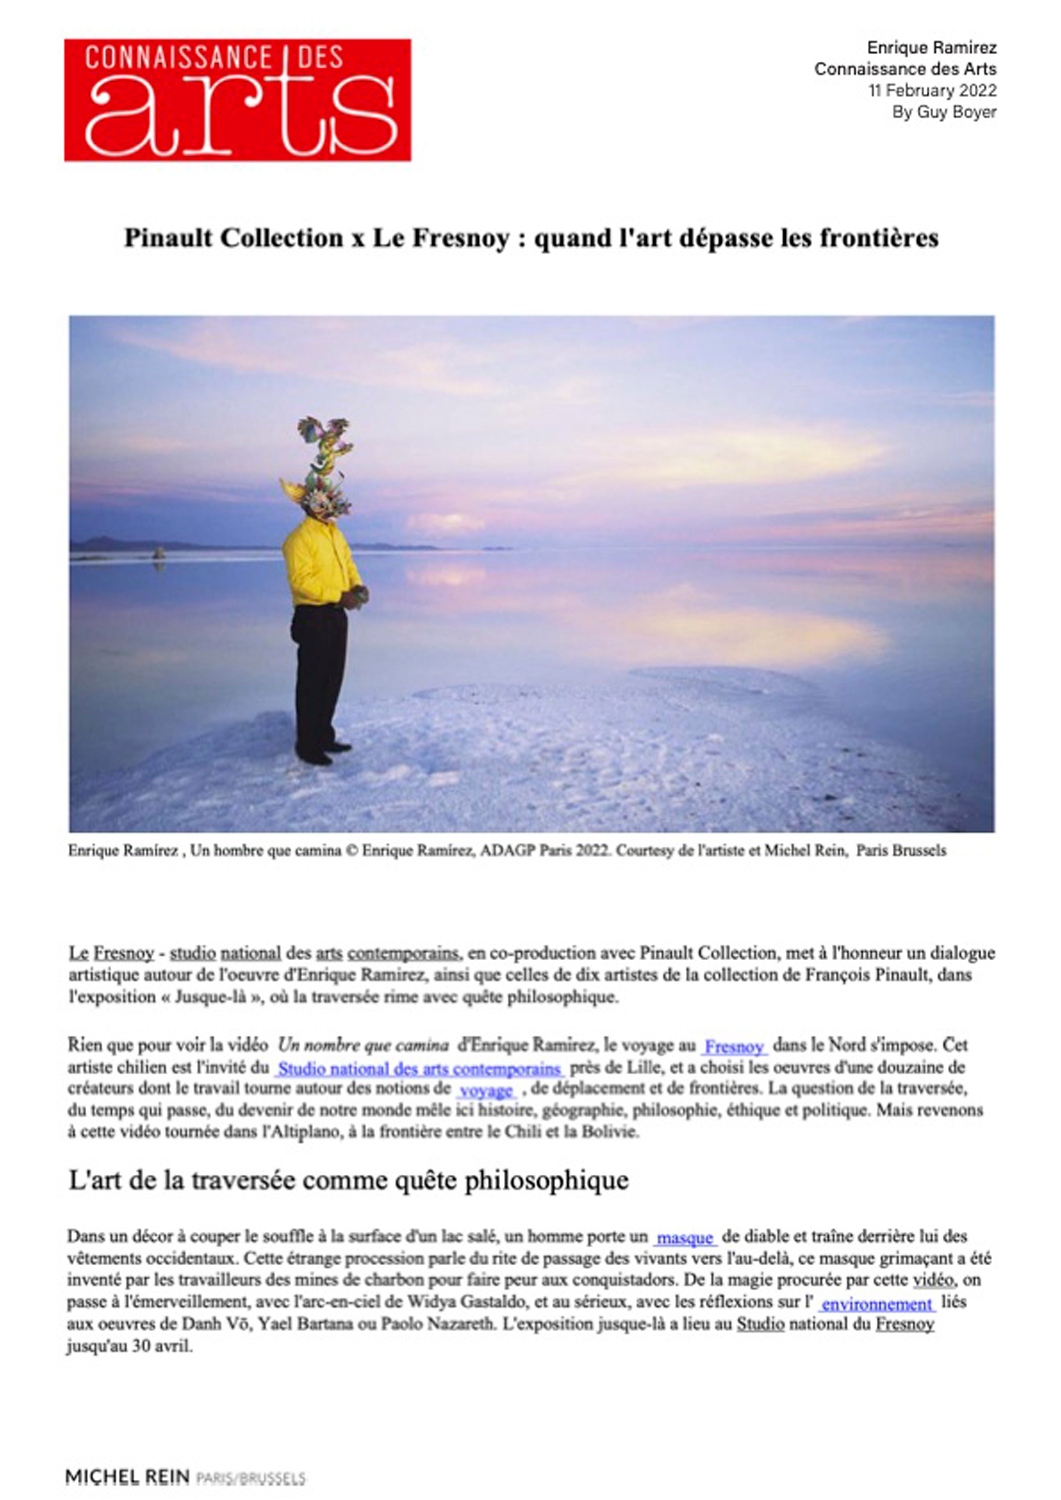 Pinault Collection x Le Fresnoy : quand l'art dpasse les frontires - Connaissance des arts